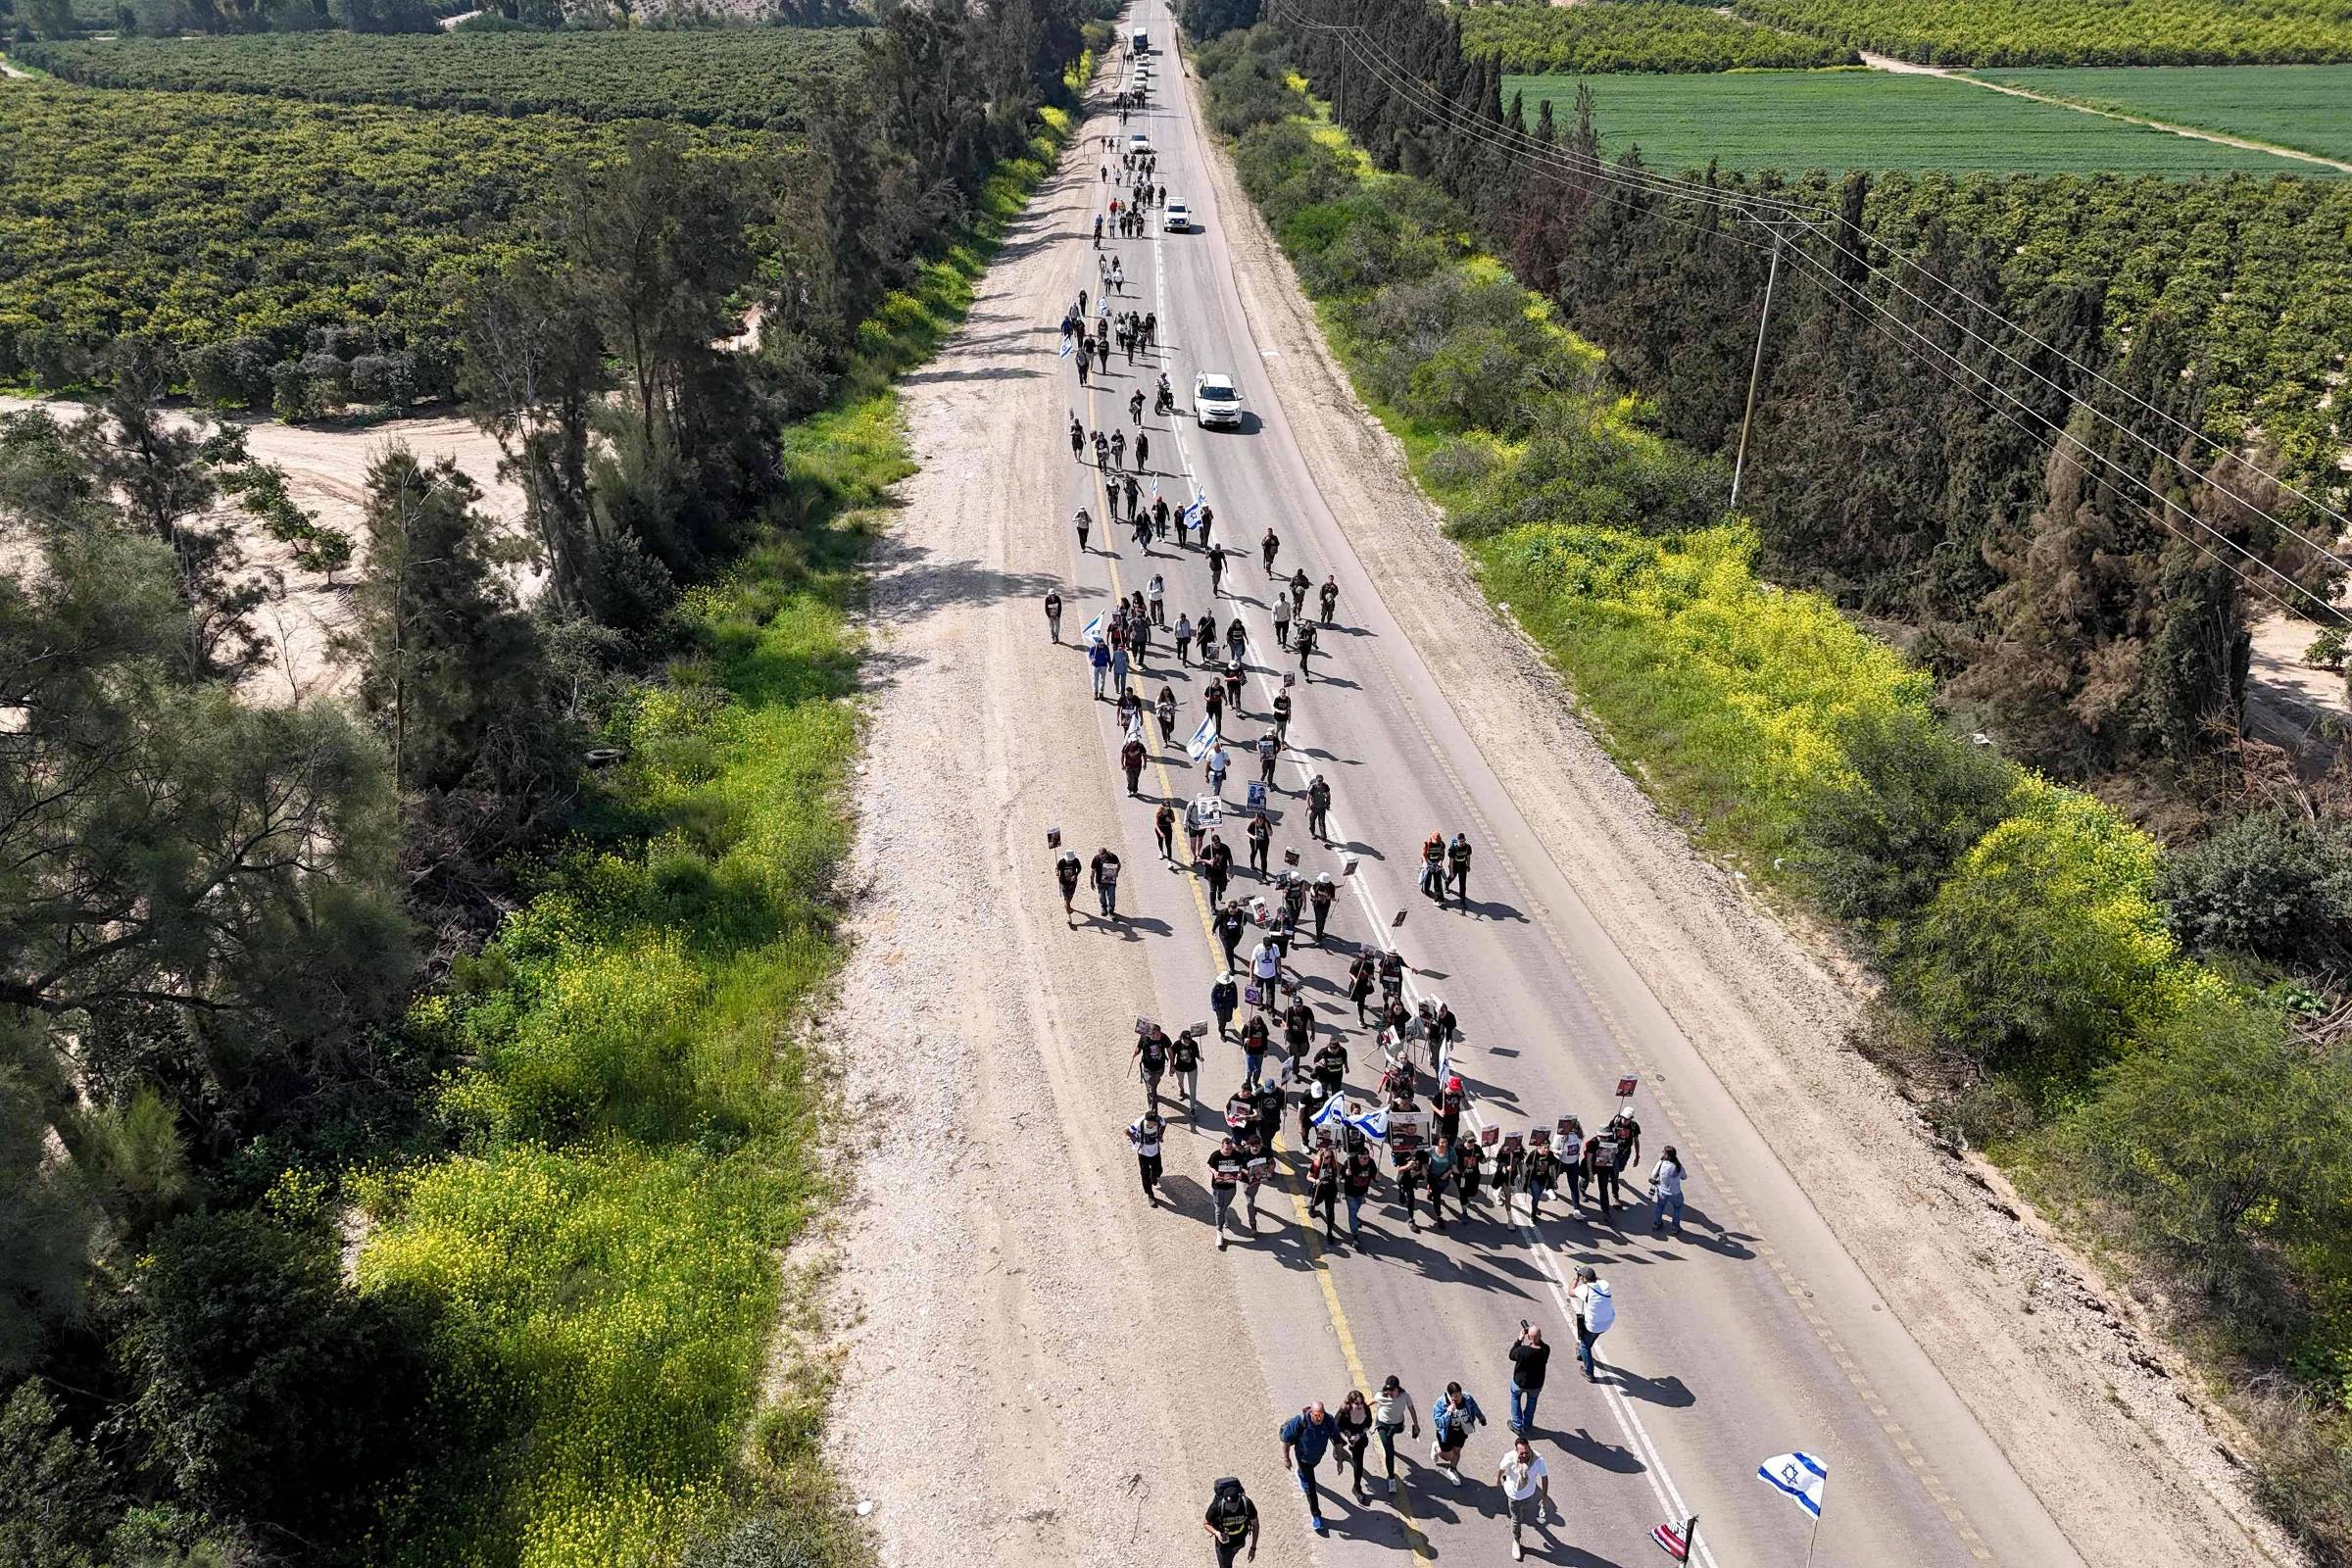 Marcha pelos reféns em Gaza tem início em kibbutz Re'im